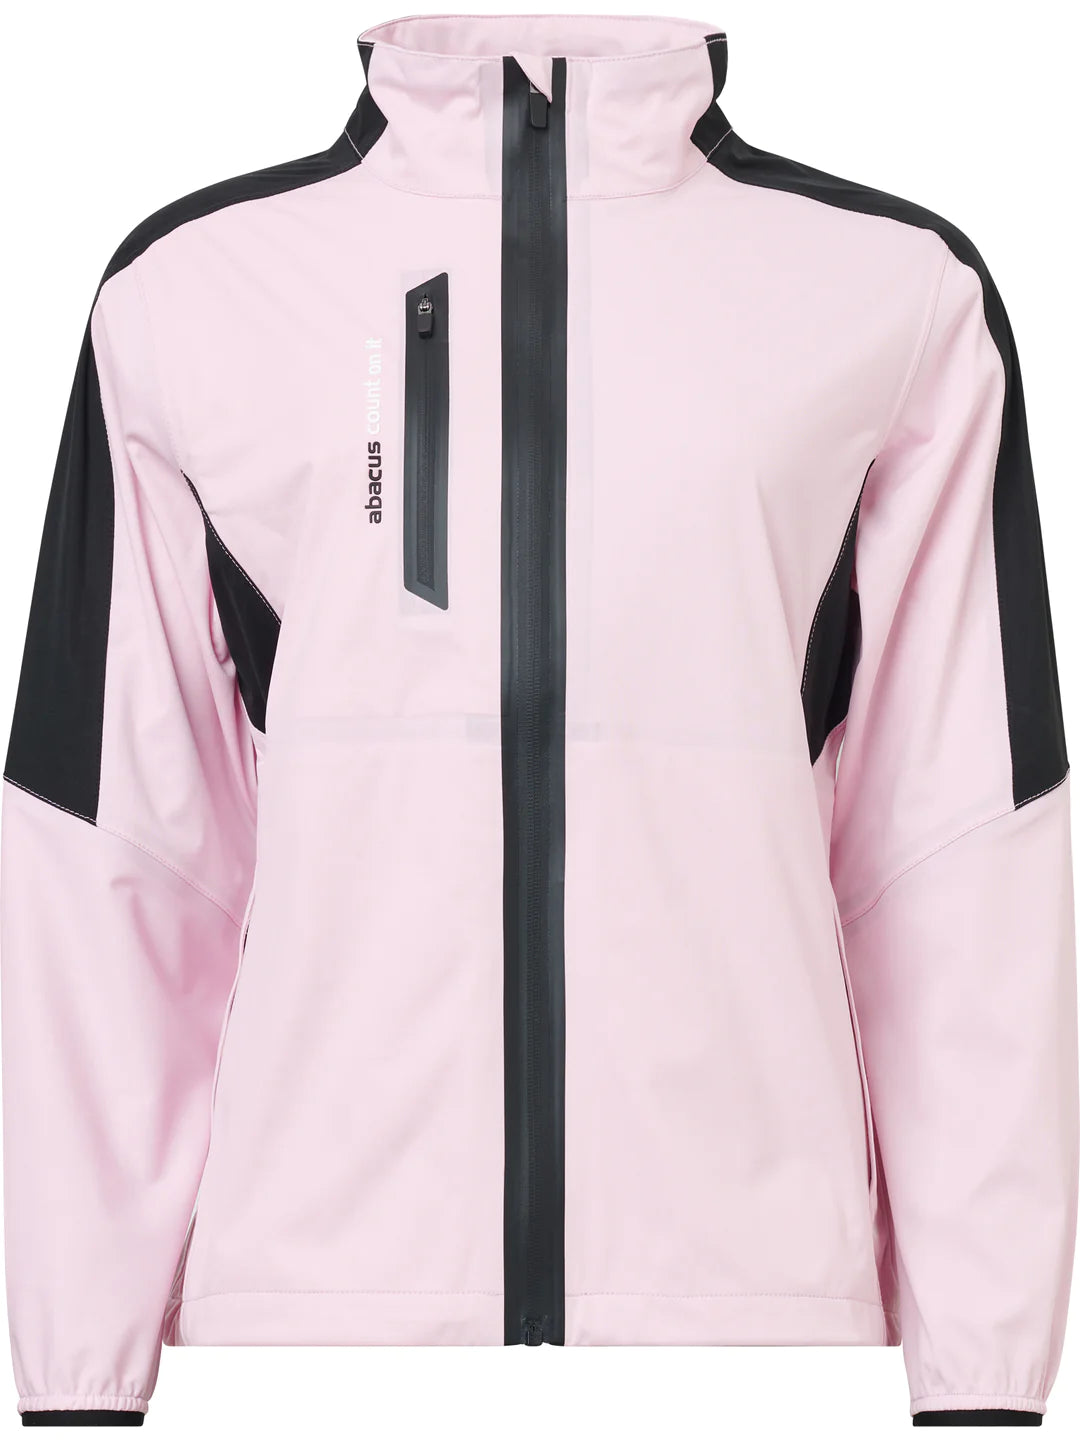 Abacus Sports Wear:  Women’s Rain Jacket – Bounce